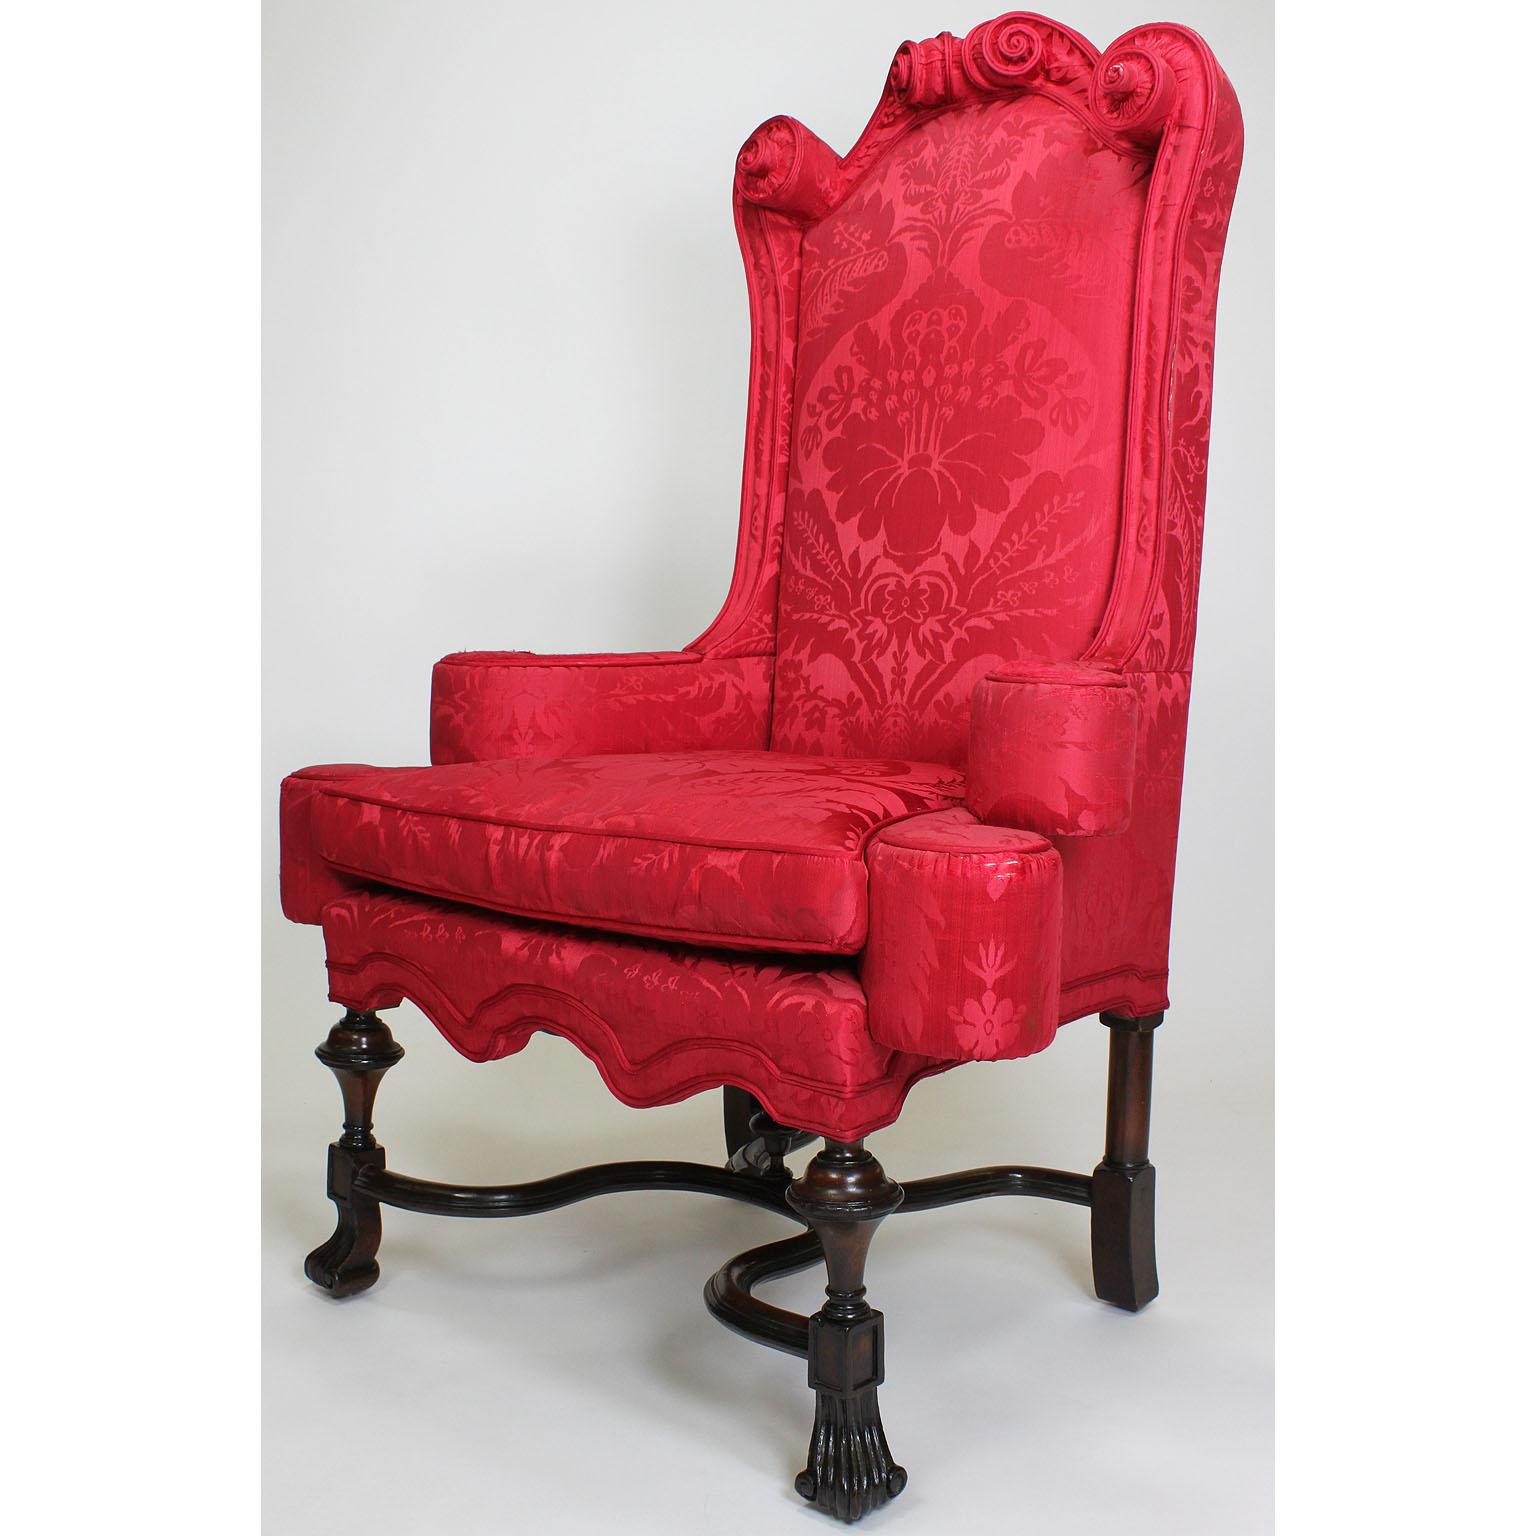 Paire de fauteuils de style William & Mary du 19e siècle en acajou et tapissés de soie, d'une grande finesse et d'une grande rareté. Les cadres à haut dossier avec des coins rembourrés à volutes, des accoudoirs arrondis avec des pare-chocs latéraux,